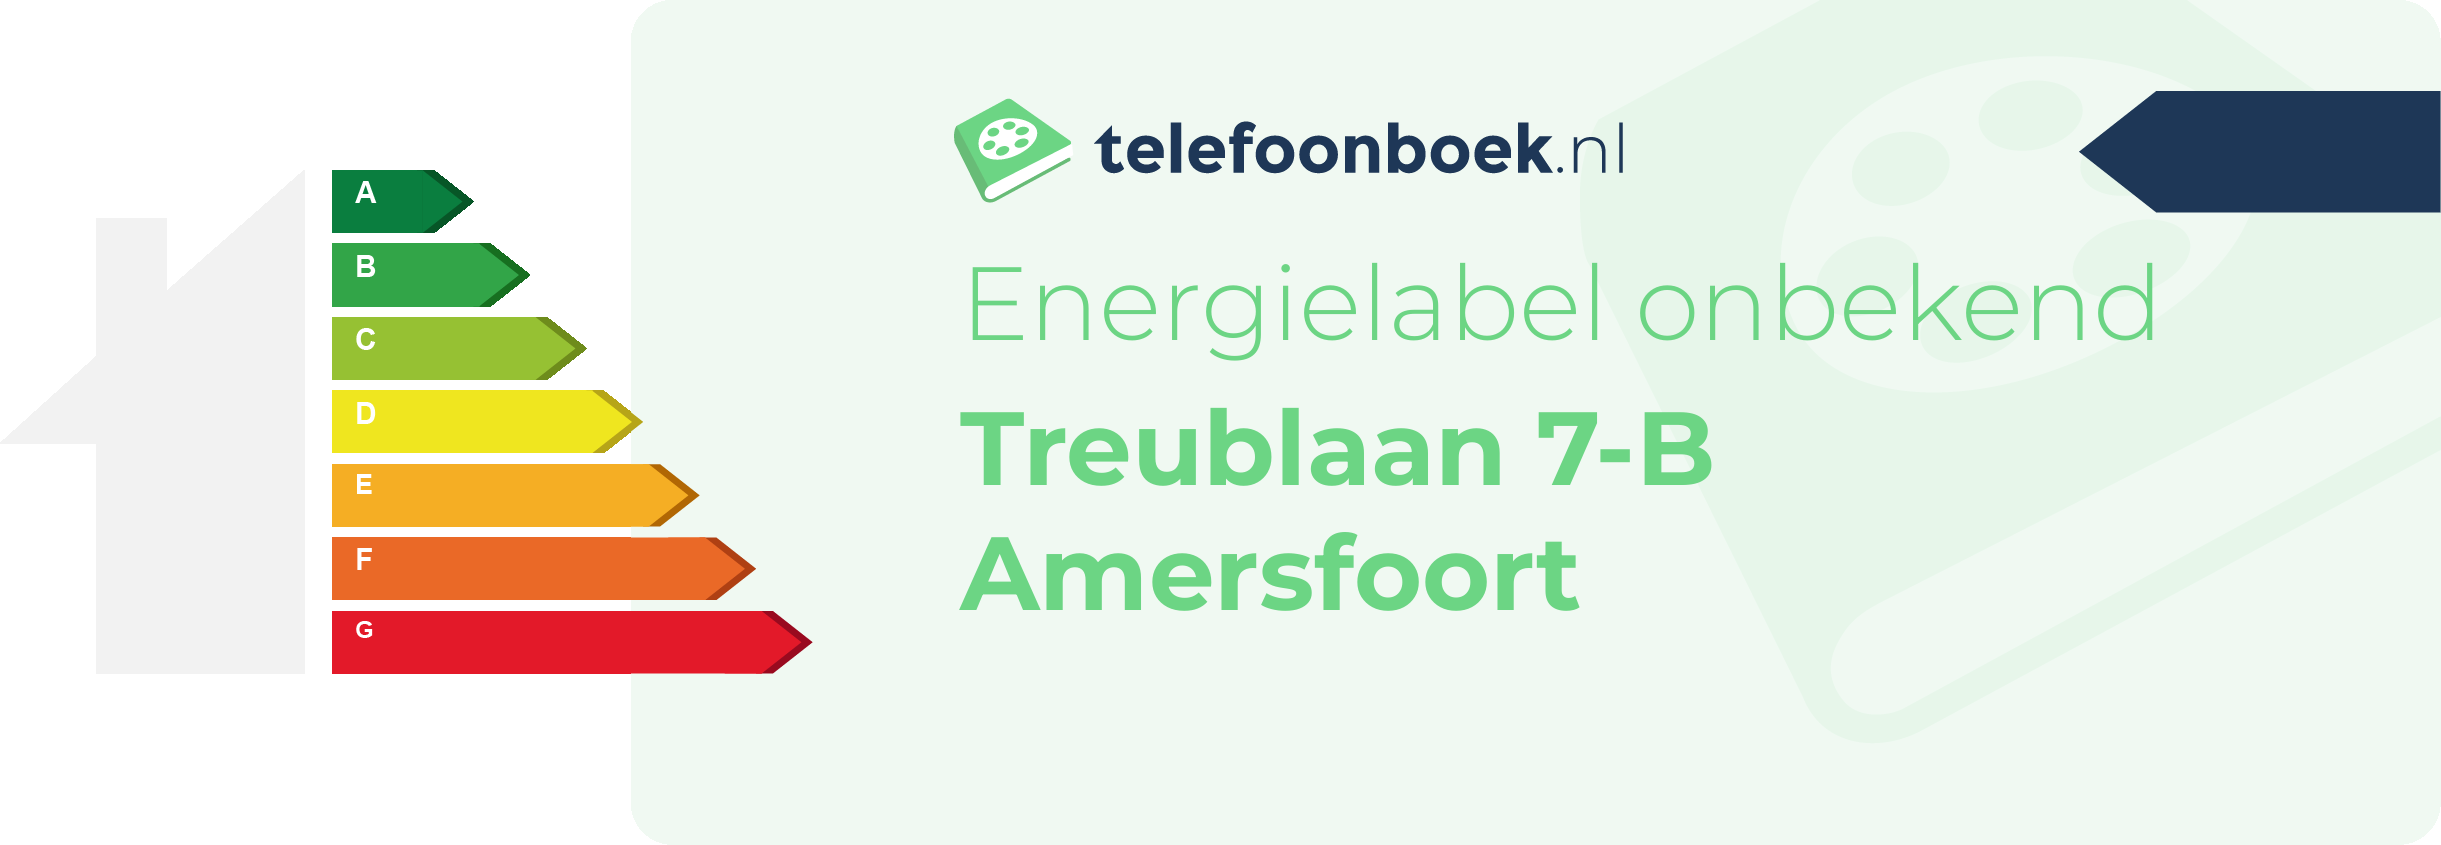 Energielabel Treublaan 7-B Amersfoort